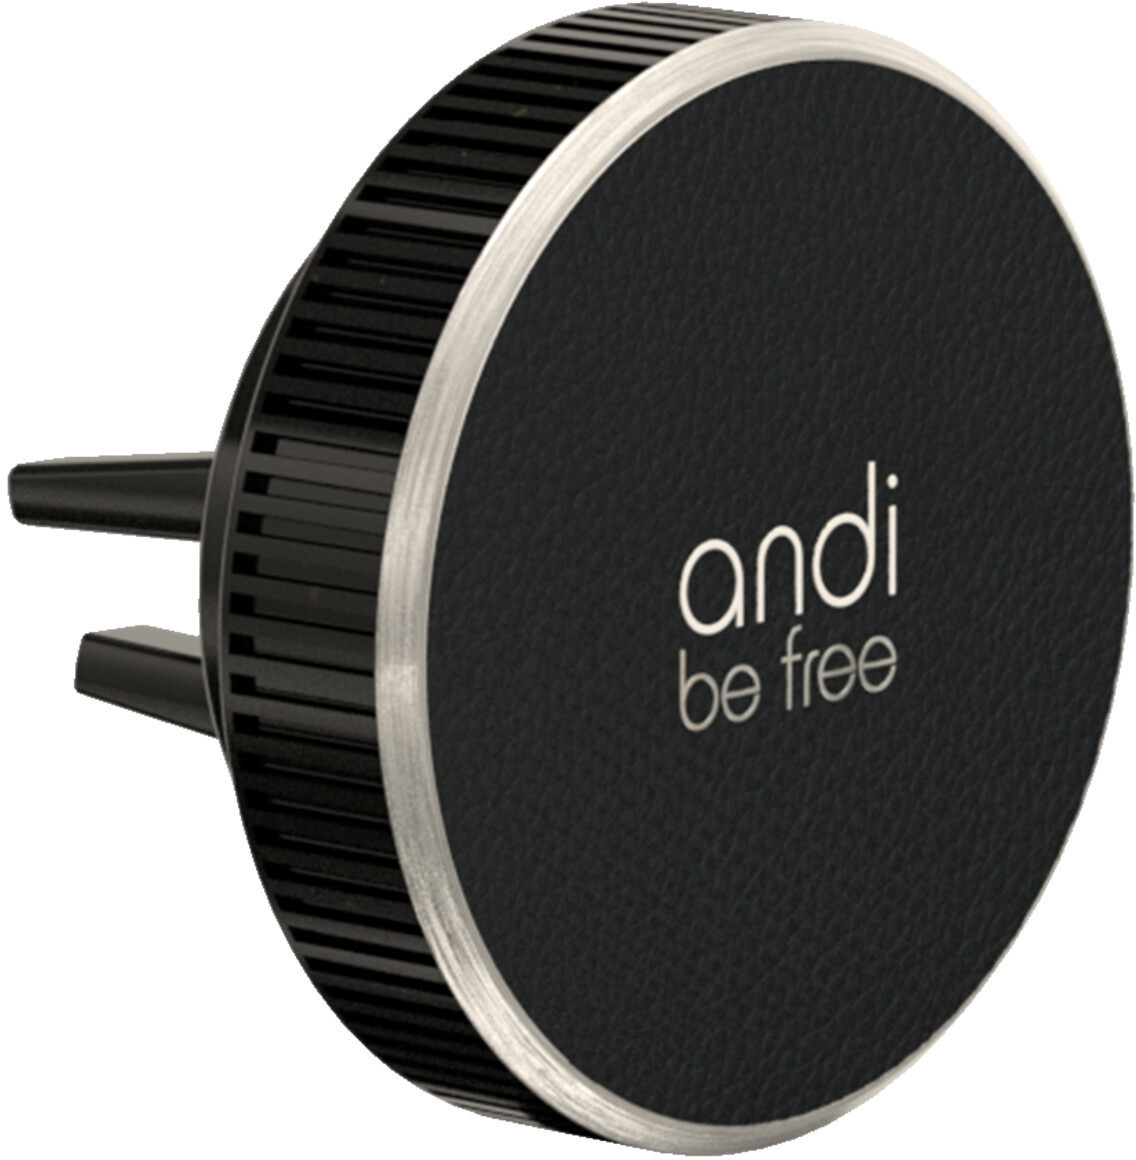 #andi be free Wireless Vent Mount Charger 15 Watt#